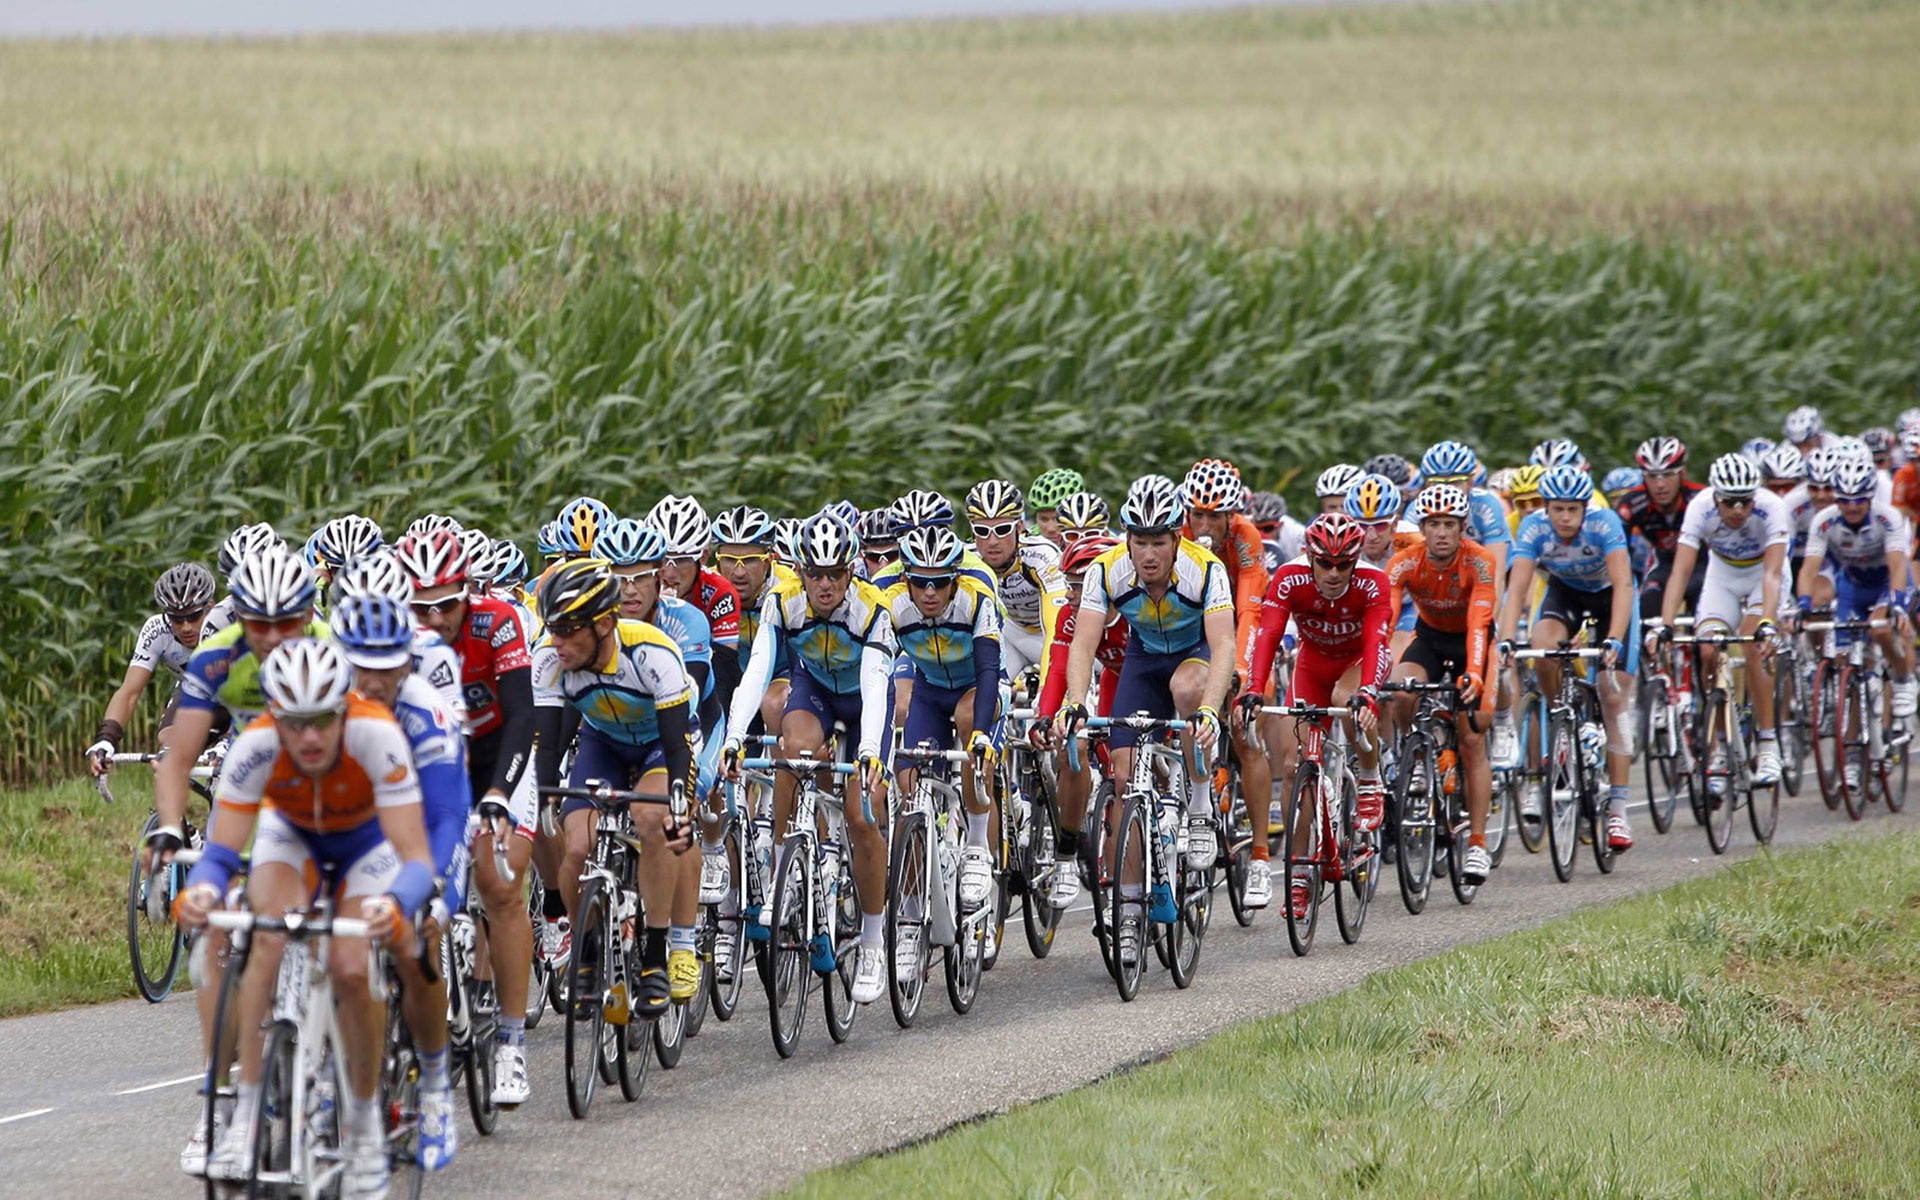 Cyclists - Le Tour De France